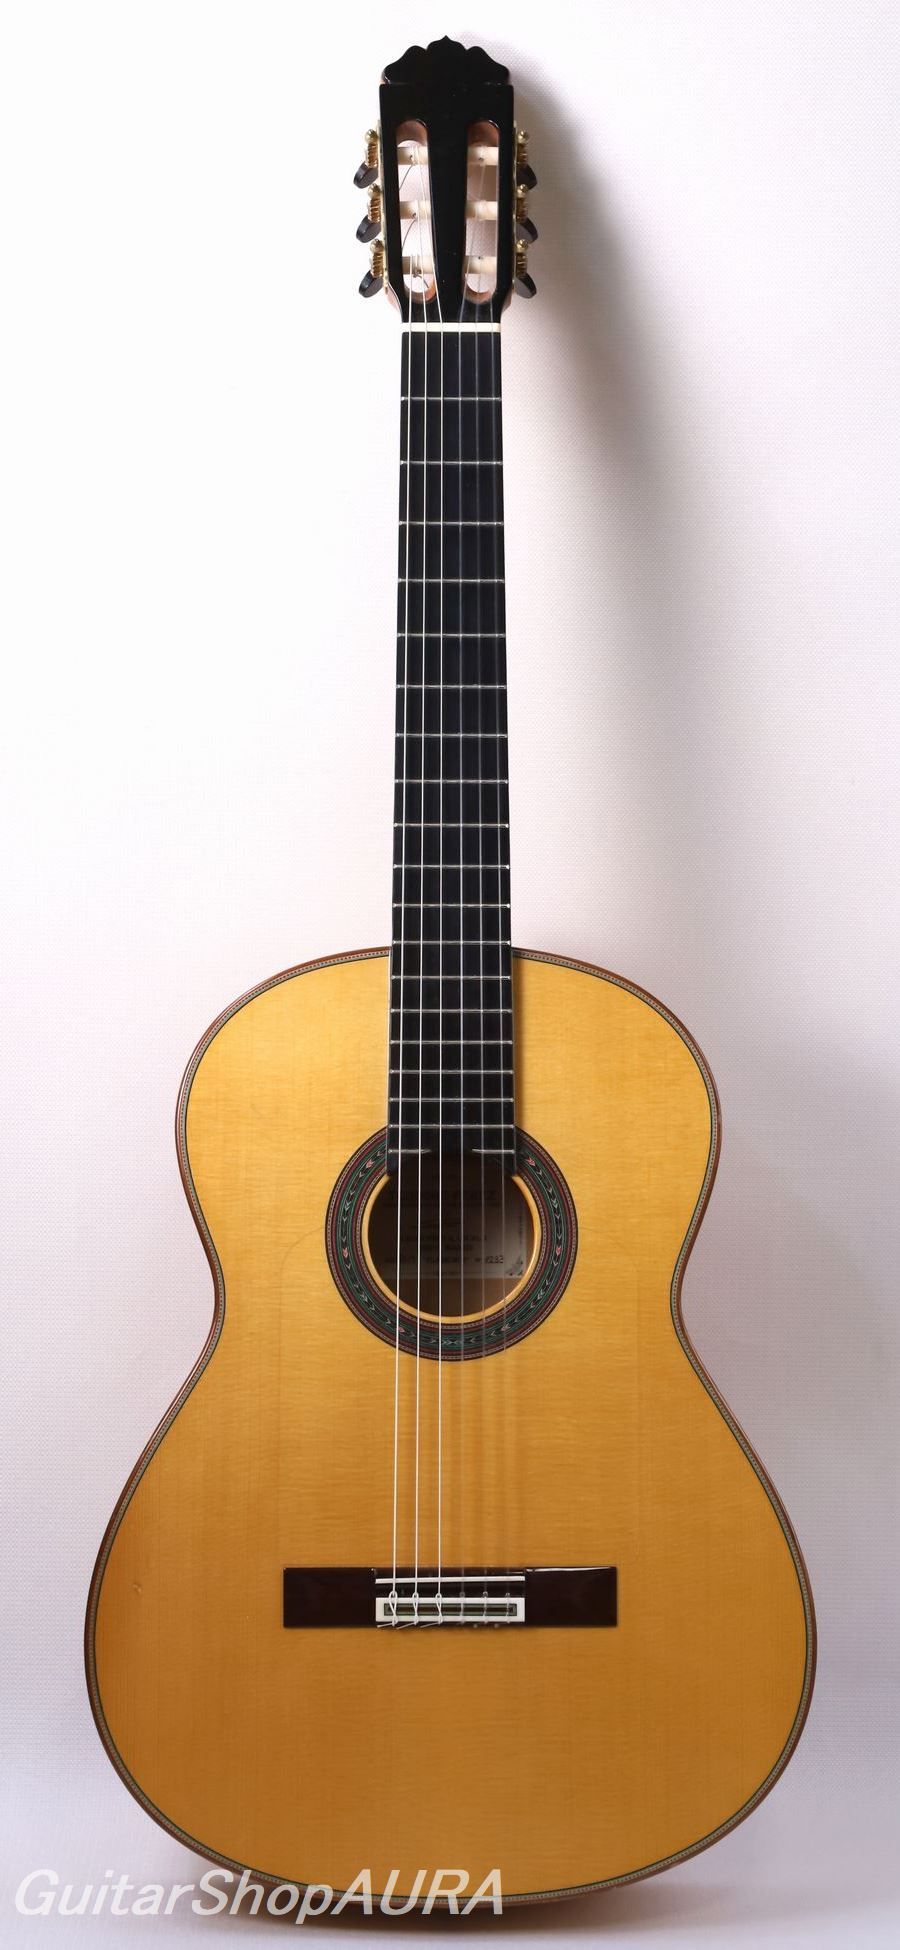 田村満 1976年 No2000 フラメンコ ギター - アコースティックギター